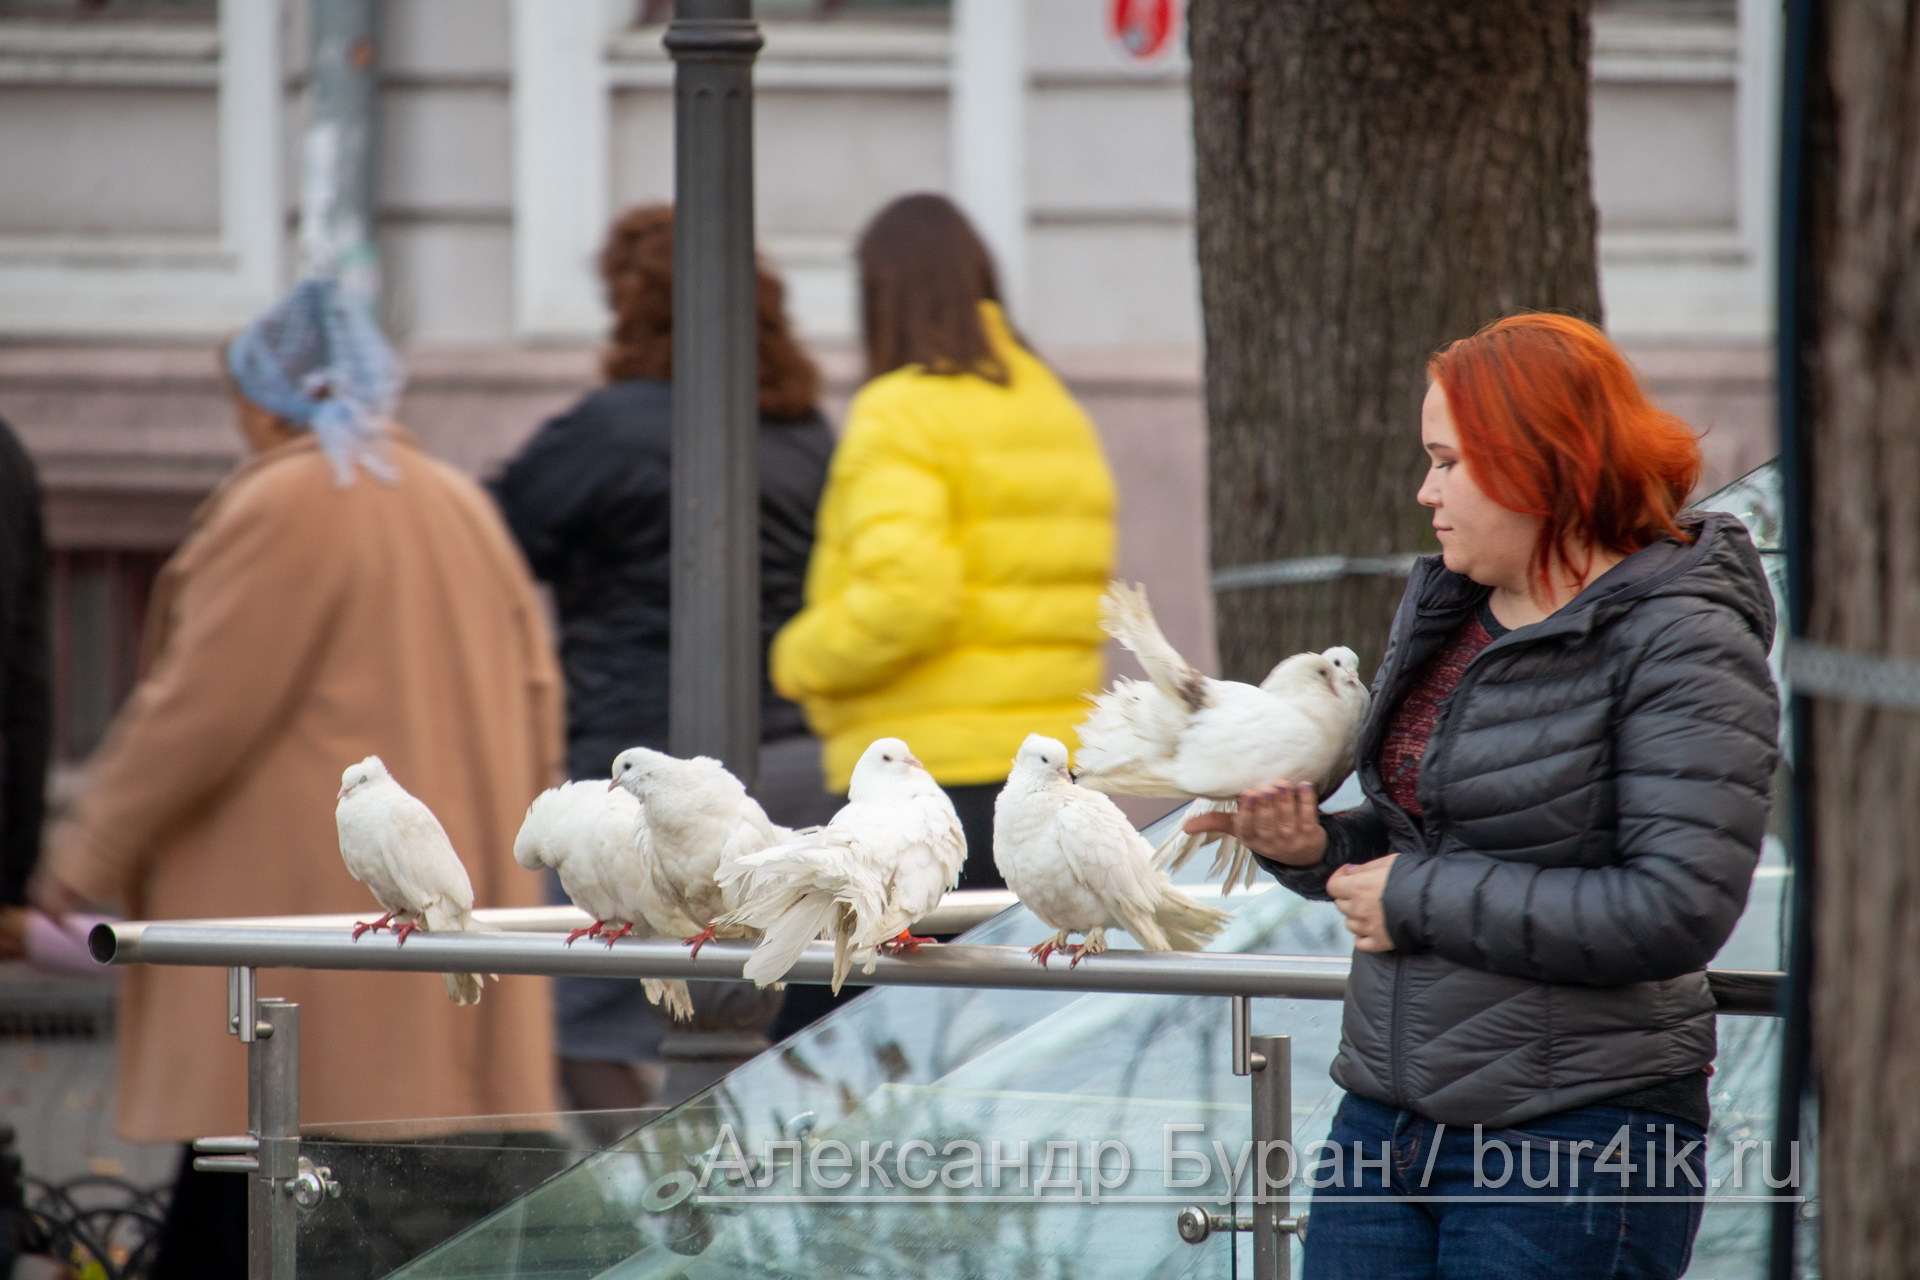 Рыжеволосая женщина предлагает взять оплачиваемый фото с белыми голубями в город - Украина, Одесса, 09,11,2019